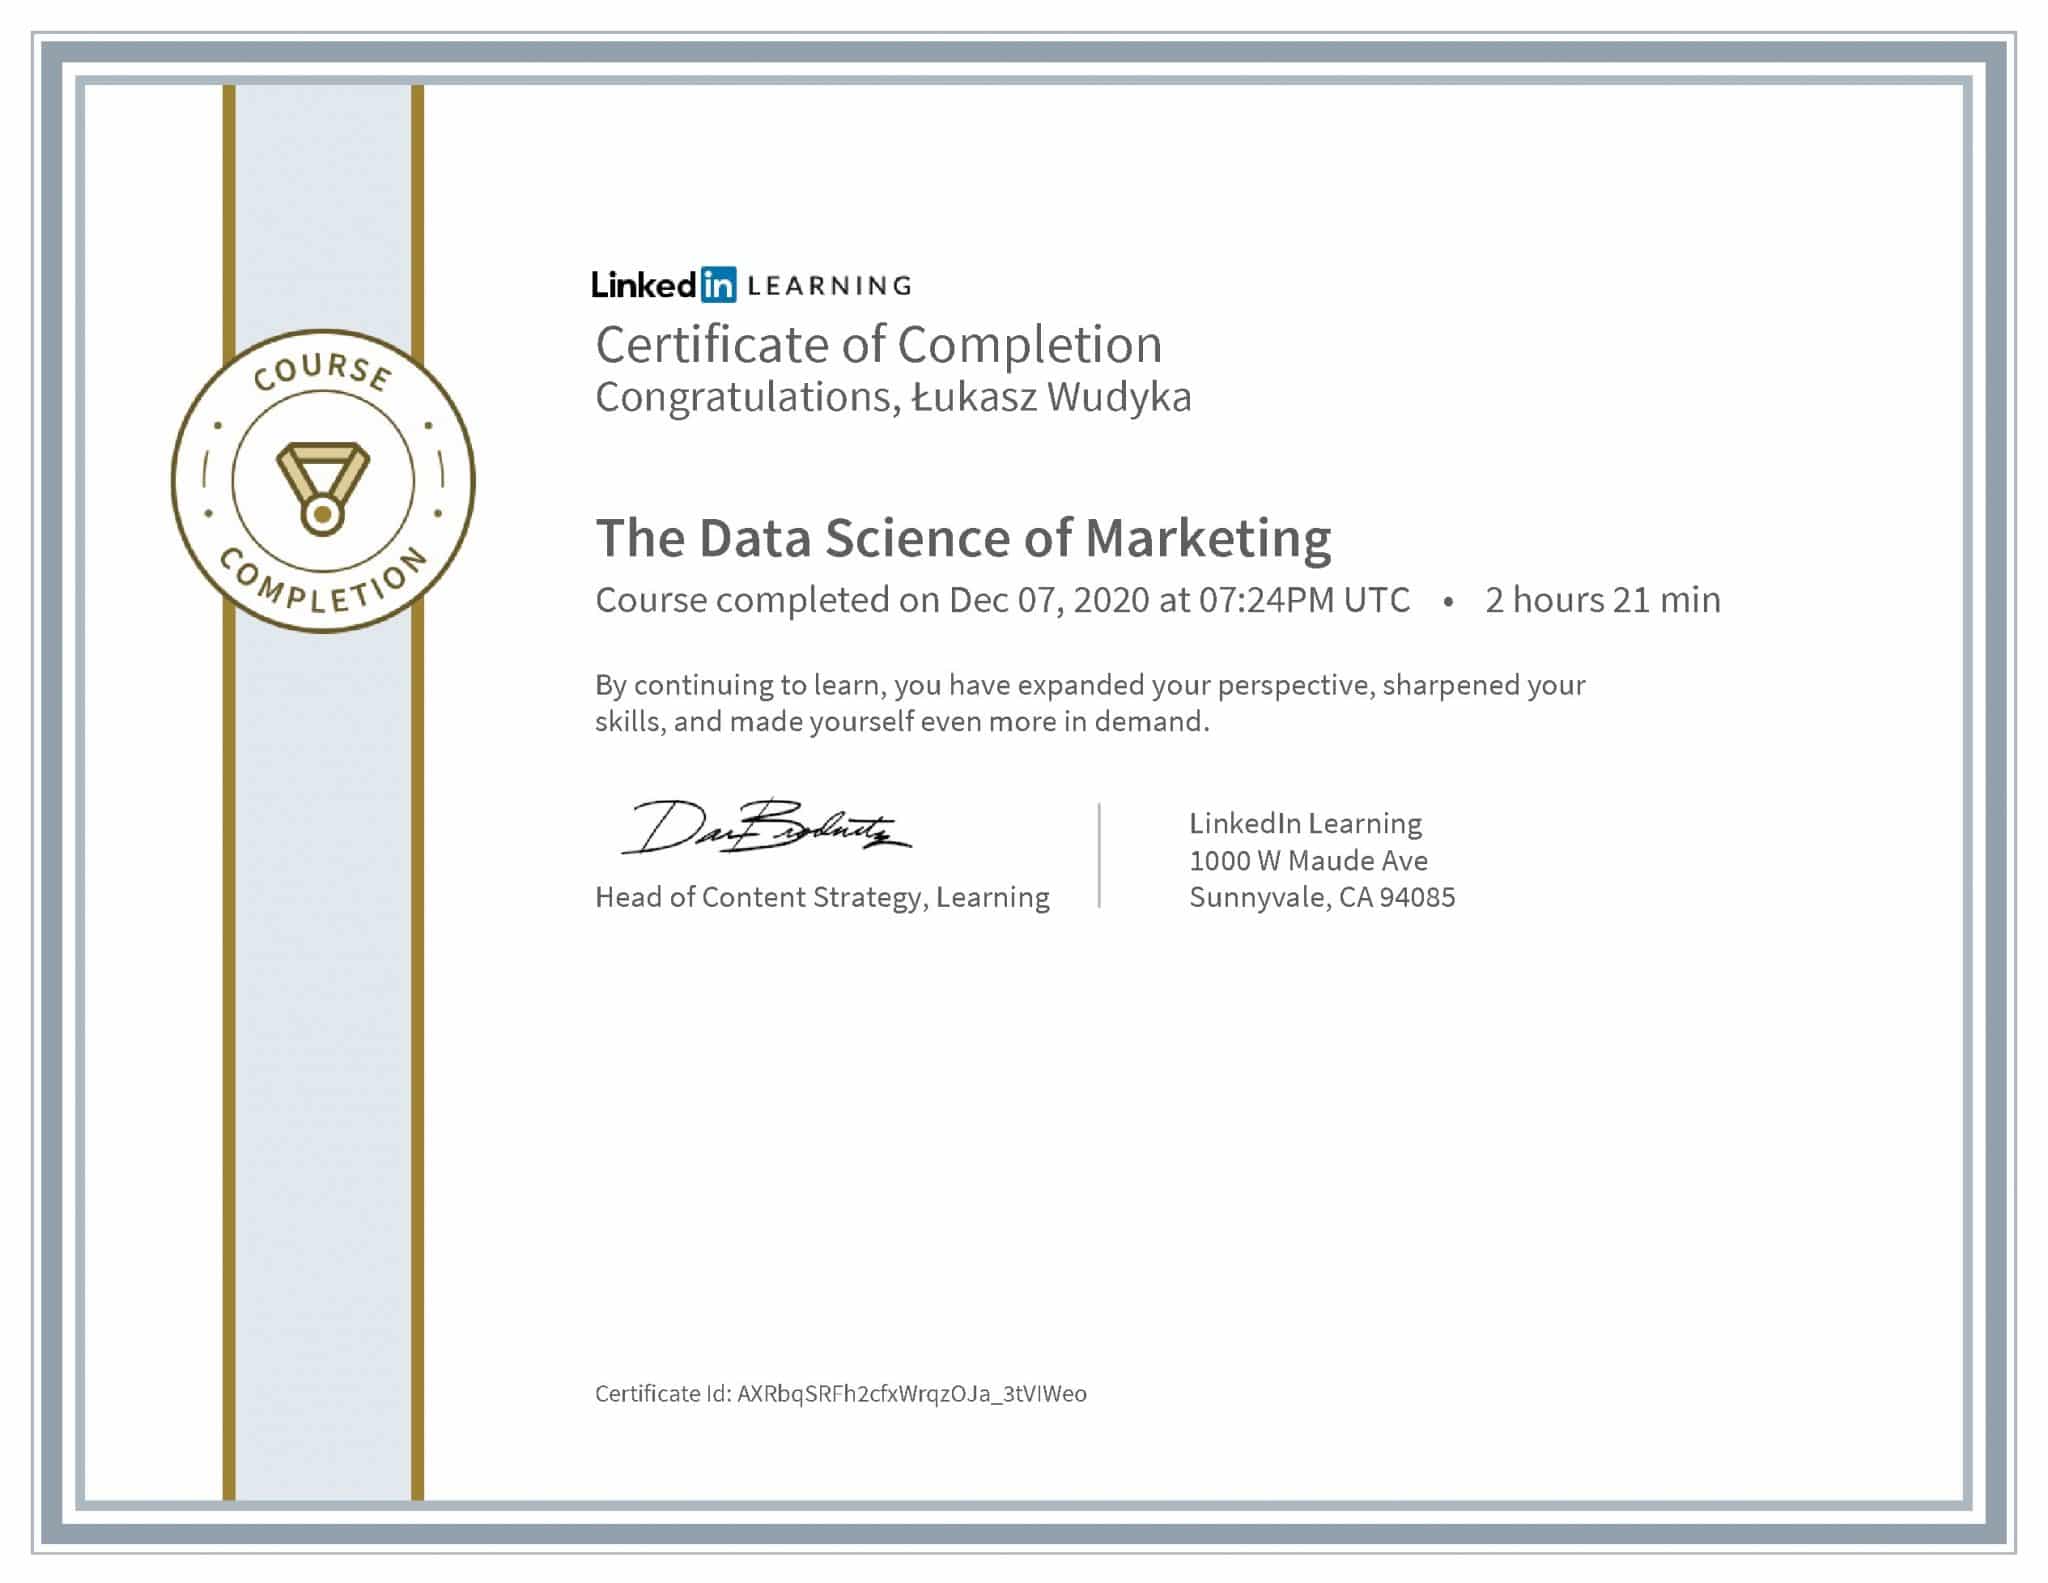 Łukasz Wudyka certyfikat LinkedIn The Data Science of Marketing